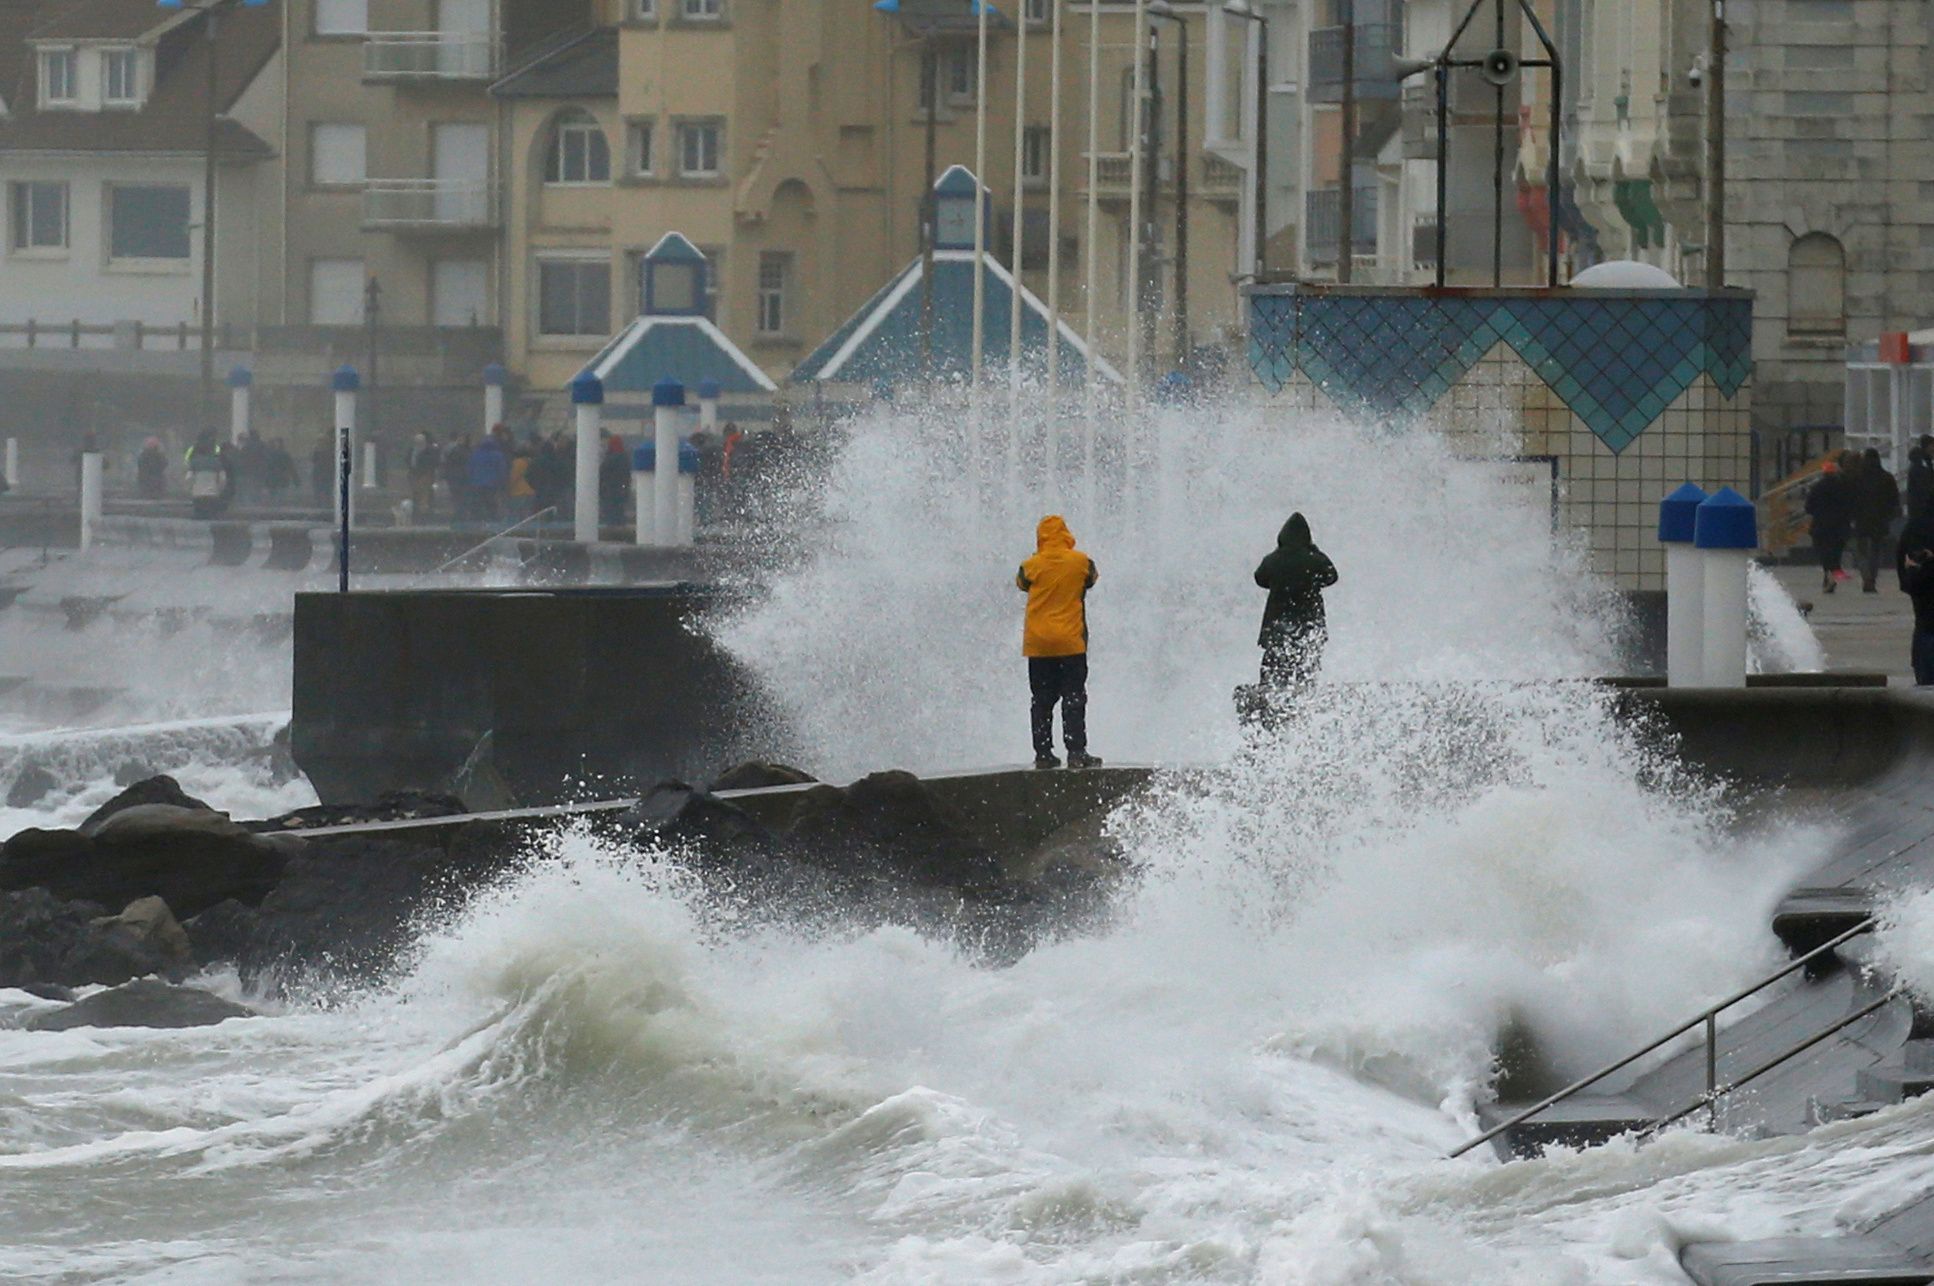 Ve francouzském Wimereuxu pozorují lidé, jak rozbouřené vlny naráží kvůli orkánu na pobřeží